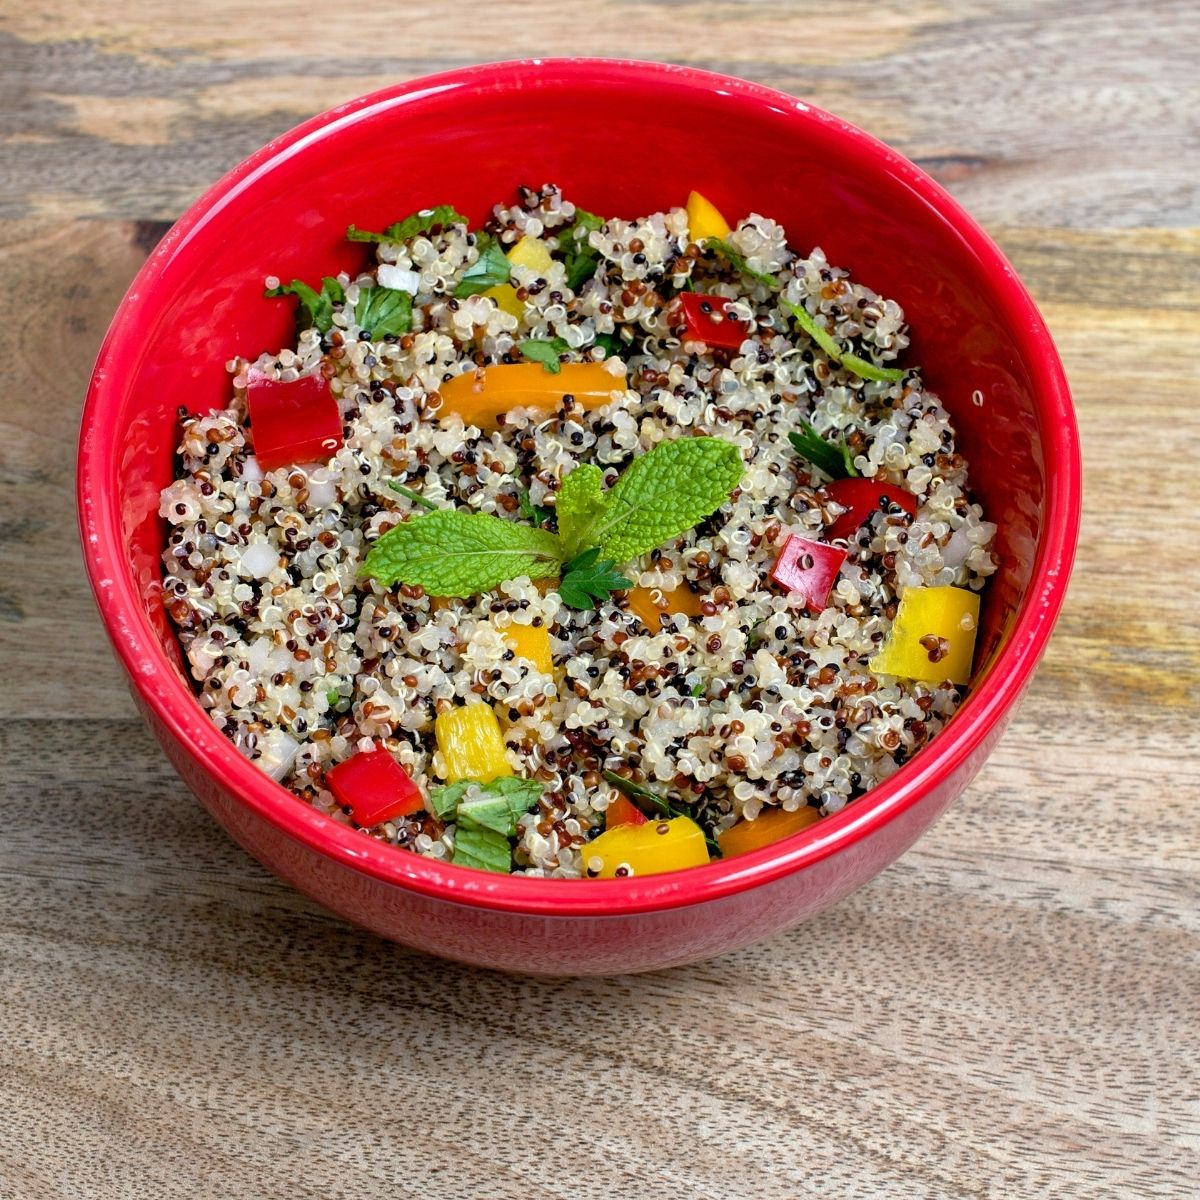 Keto quinoa salad in a red bowl